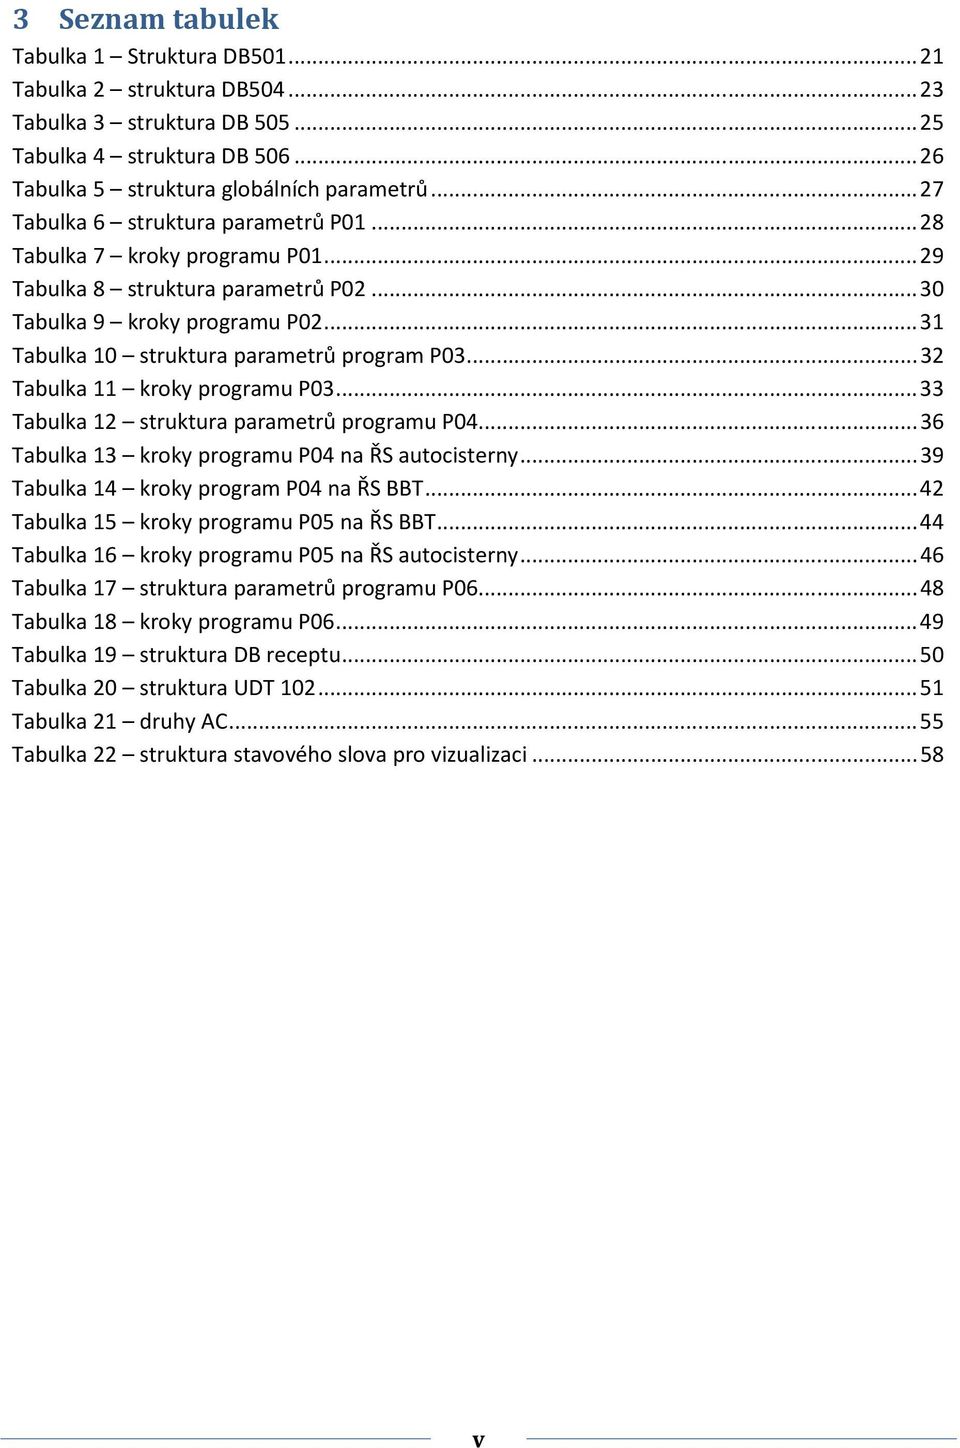 .. 32 Tabulka 11 kroky programu P03... 33 Tabulka 12 struktura parametrů programu P04... 36 Tabulka 13 kroky programu P04 na ŘS autocisterny... 39 Tabulka 14 kroky program P04 na ŘS BBT.